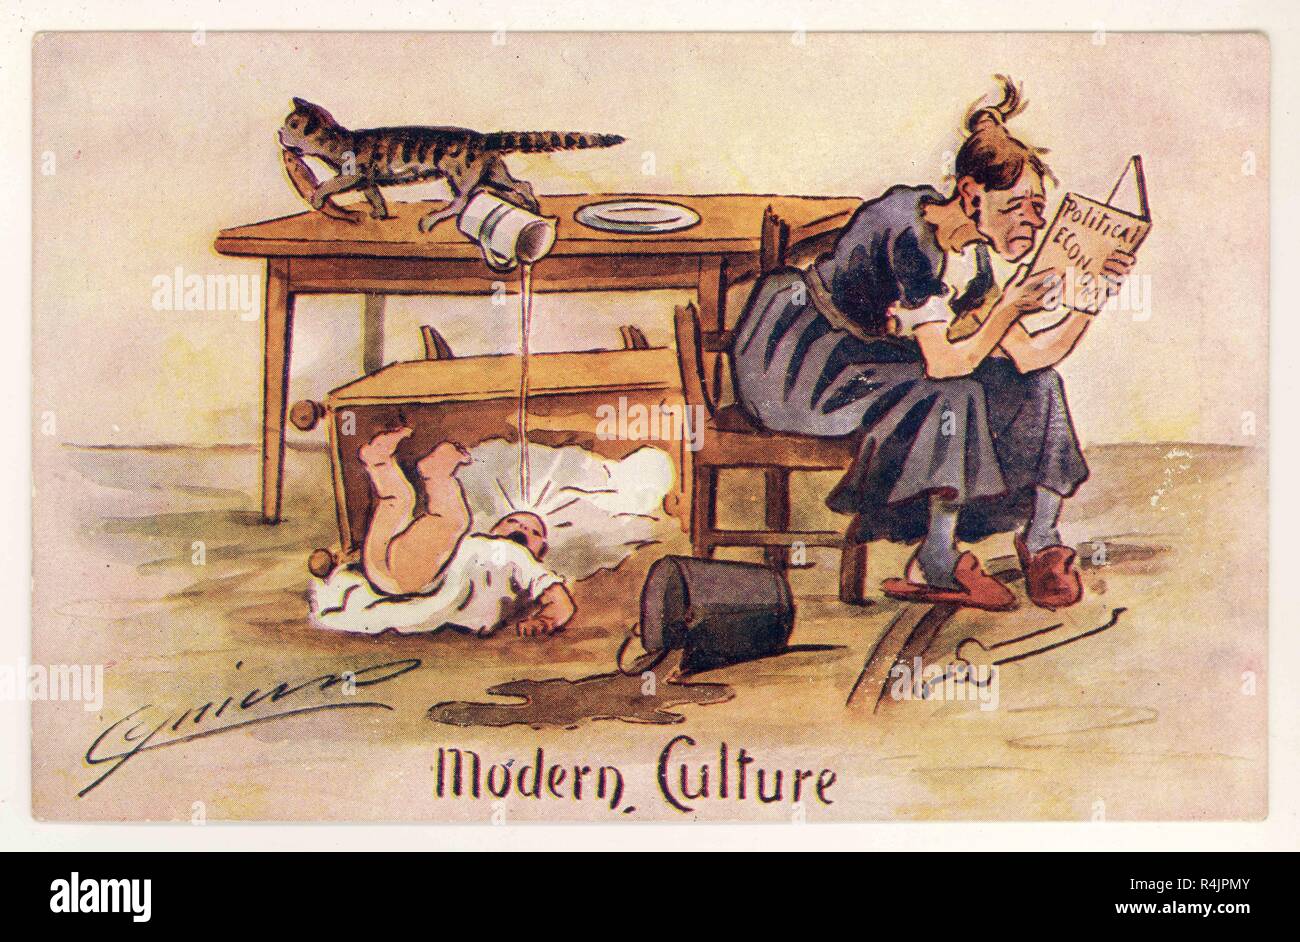 Anti Suffragette humorvoll satirischen illustrierte Postkarte 'Moderne Kultur", die eine Frau, die ihre Pflichten vernachlässigen, sich in der Politik durch die Cynicus Publishing Co. Tayport, Fife, Großbritannien ca. 1905 einbeziehen Stockfoto